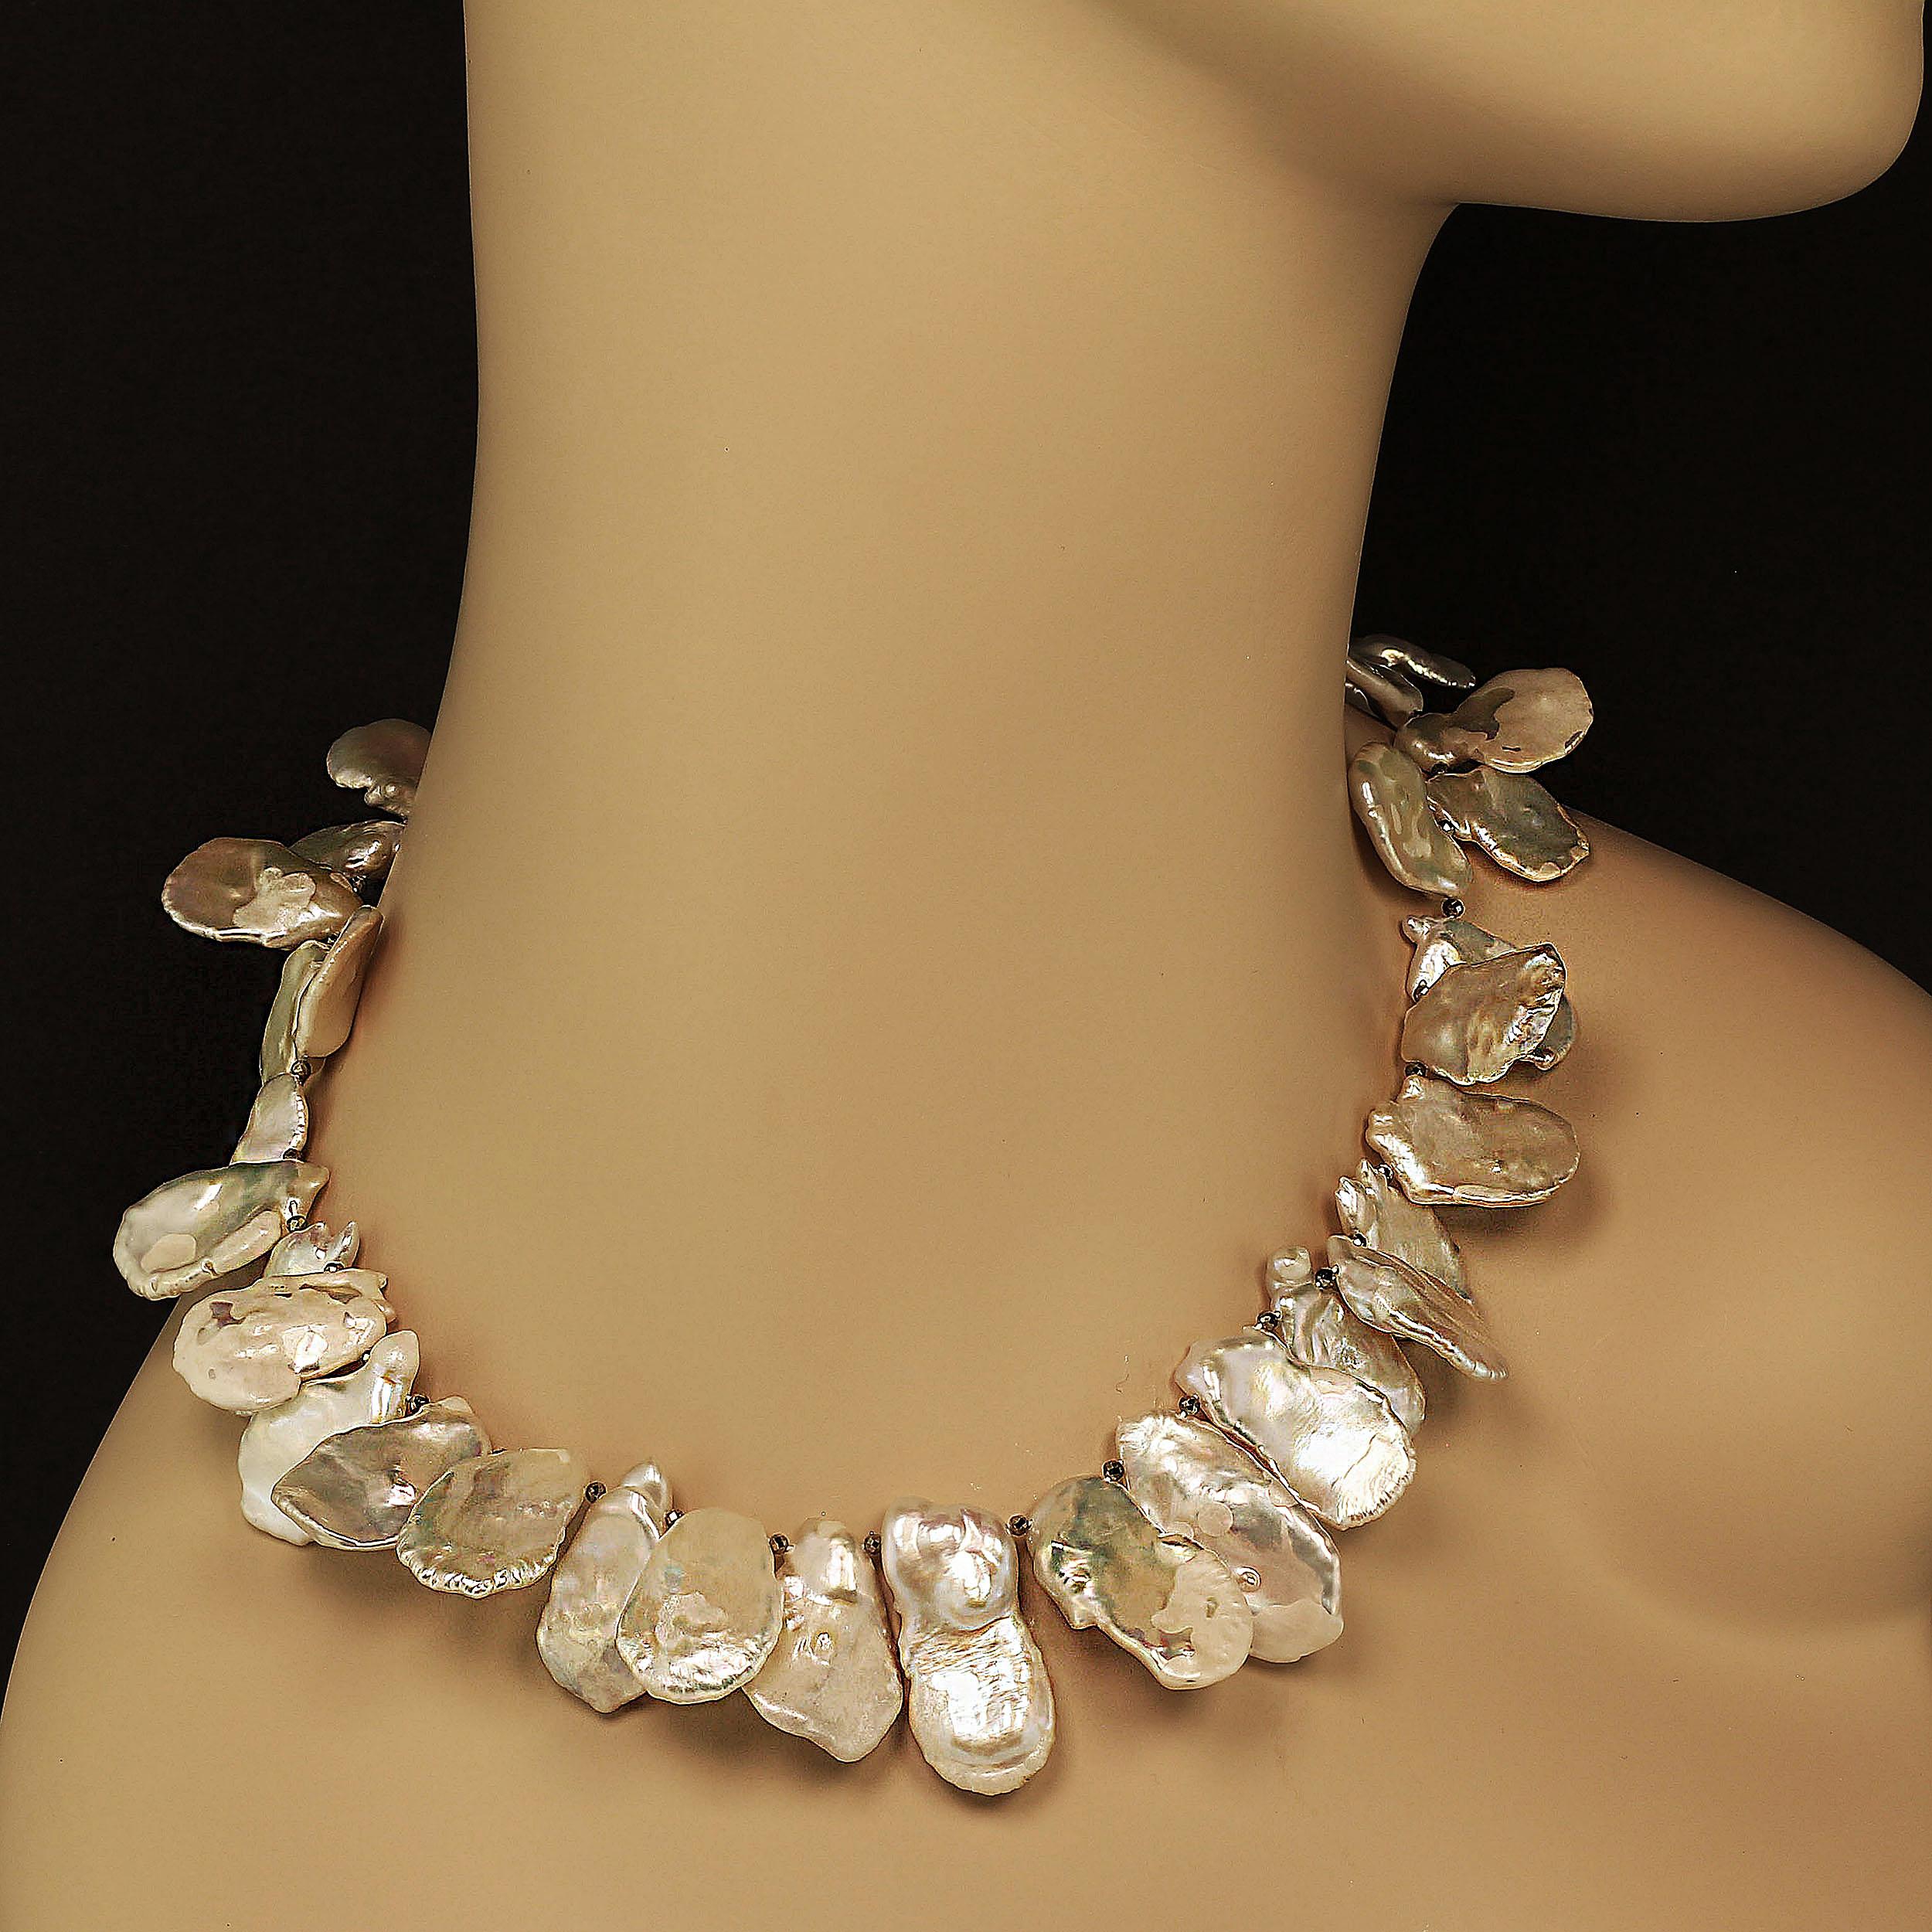 Perle AJD Matinee Long collier de perles Keshi blanches et iridescentes, pierre de naissance de juin